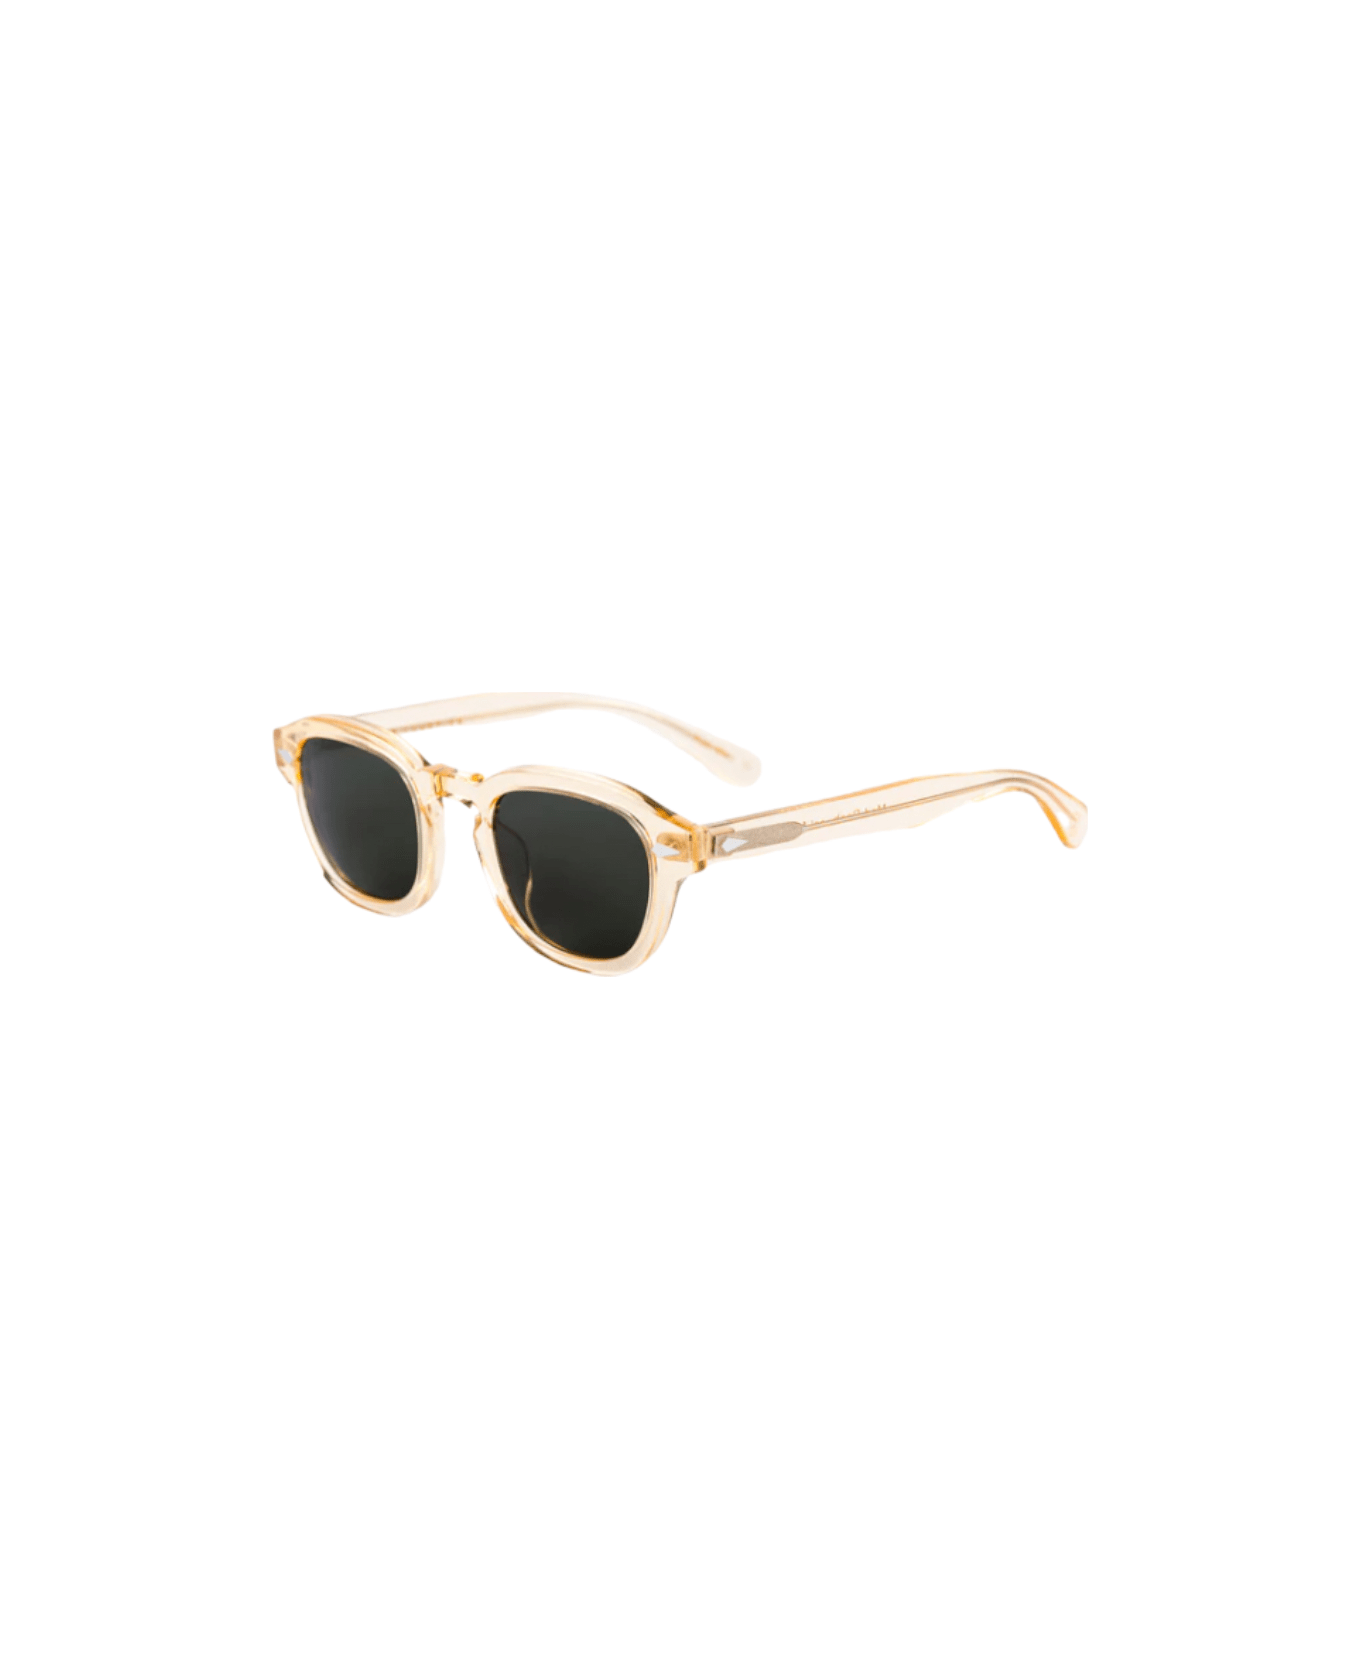 Lesca Posh - Champagne - 186 Sunglasses